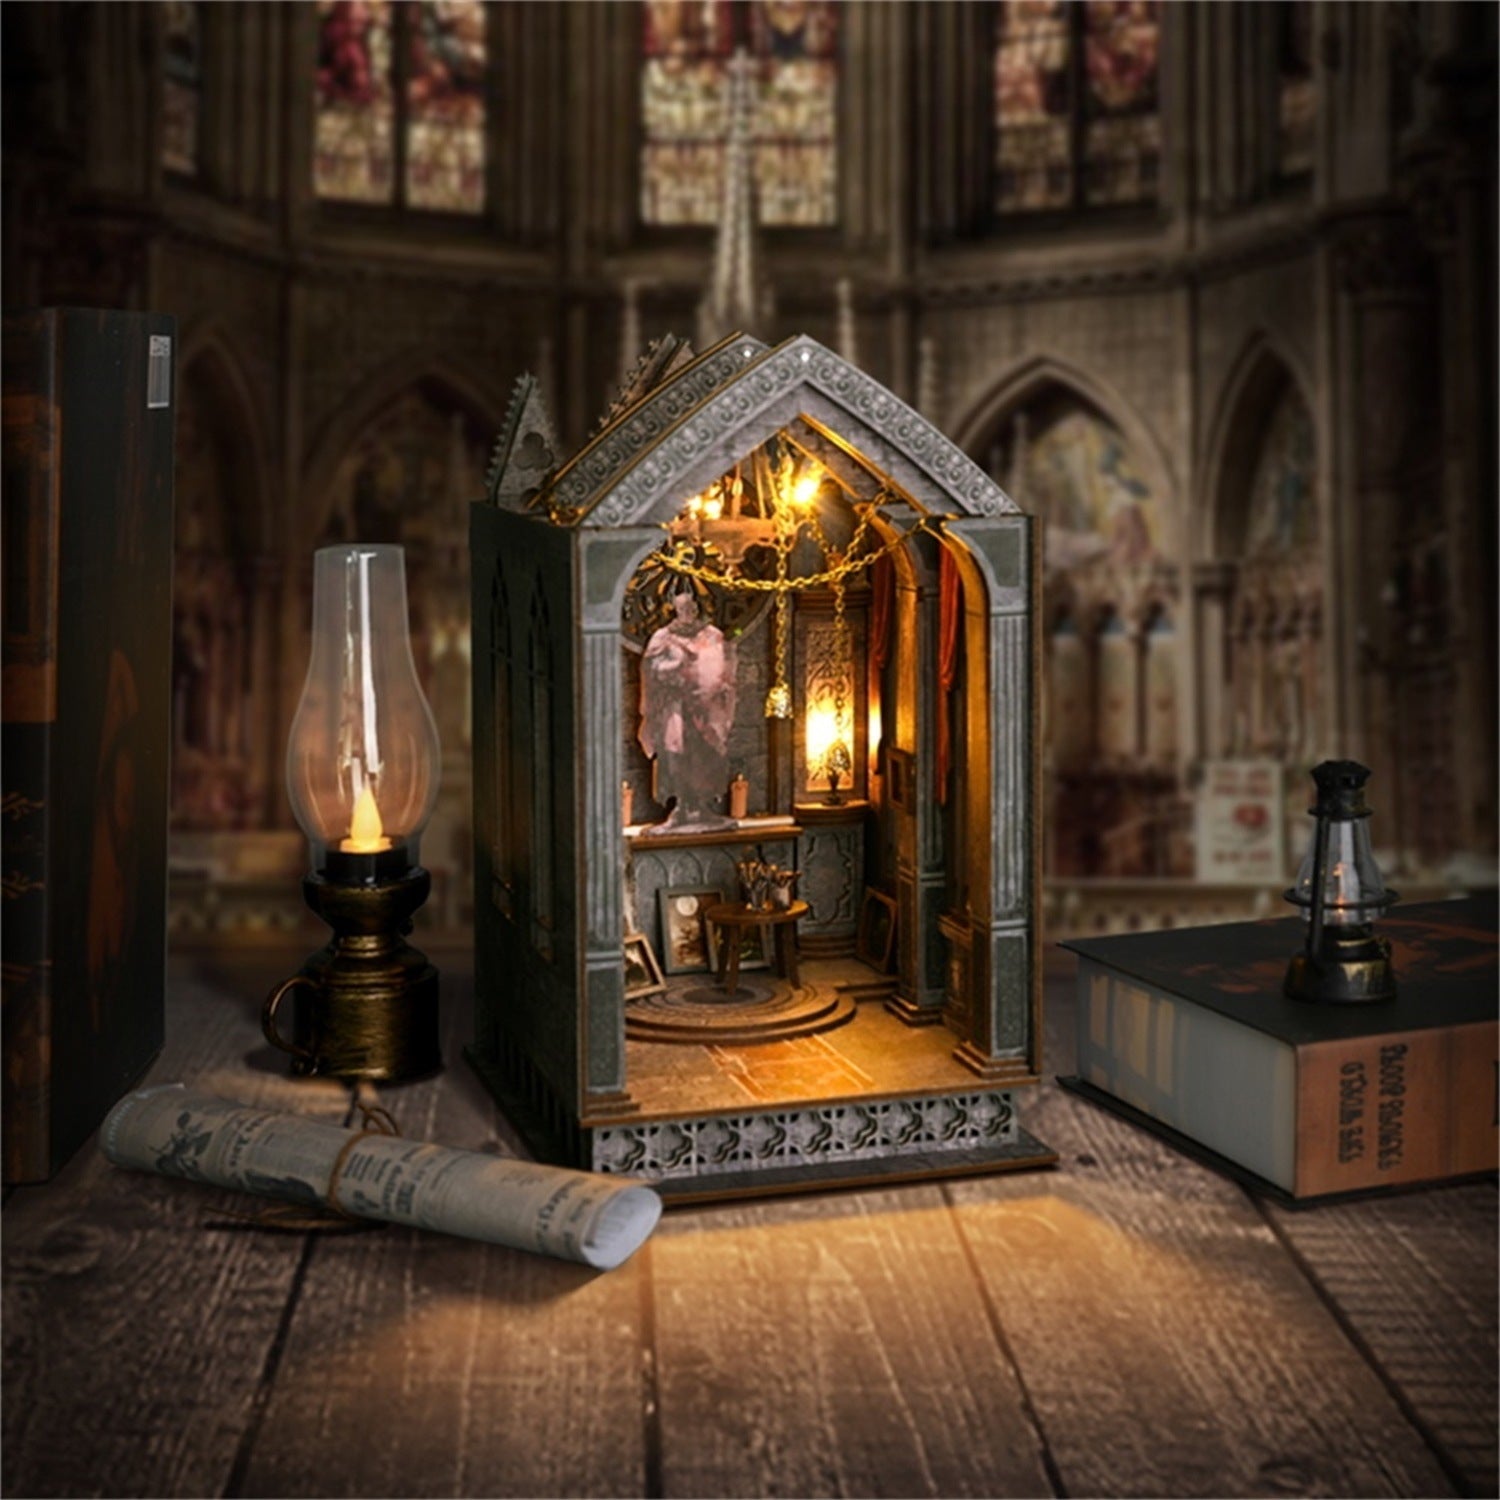 Quiet Night Prayer | DIY Book Nook Kit | Gothic Architecture Inspired 3D Wooden Bookend | Bookshelf Insert Diorama | Miniature Crafts